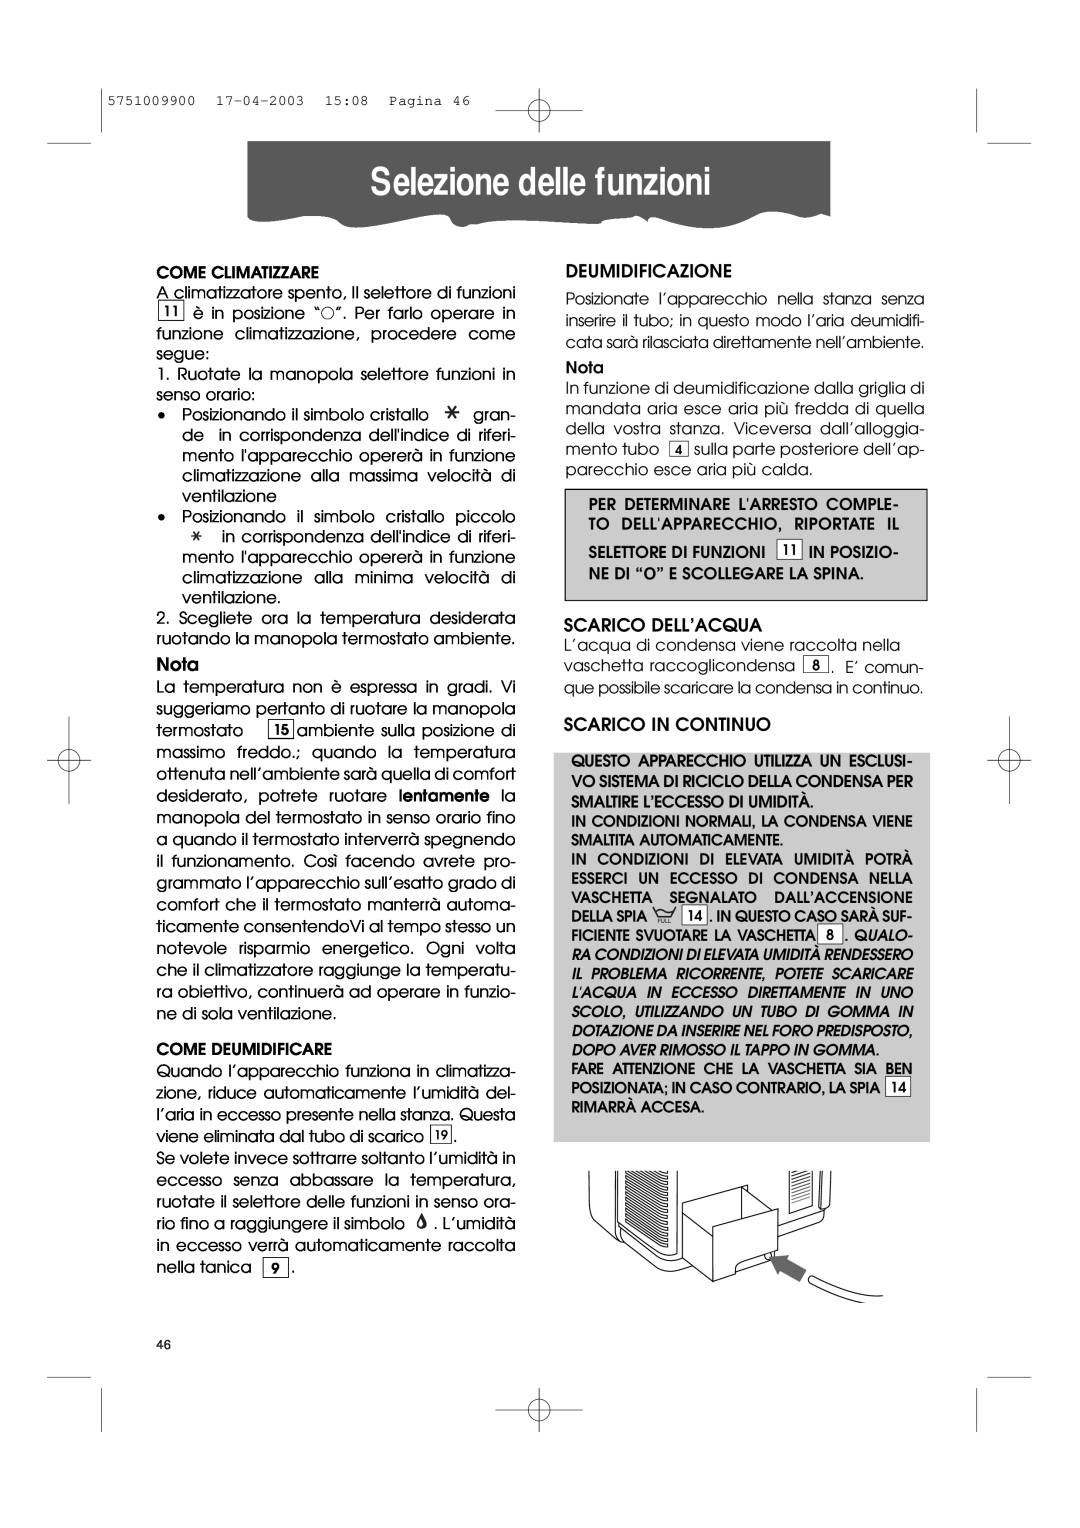 DeLonghi Pac 1000 manual Selezione delle funzioni, Nota, Deumidificazione, Scarico Dell’Acqua, Scarico In Continuo 